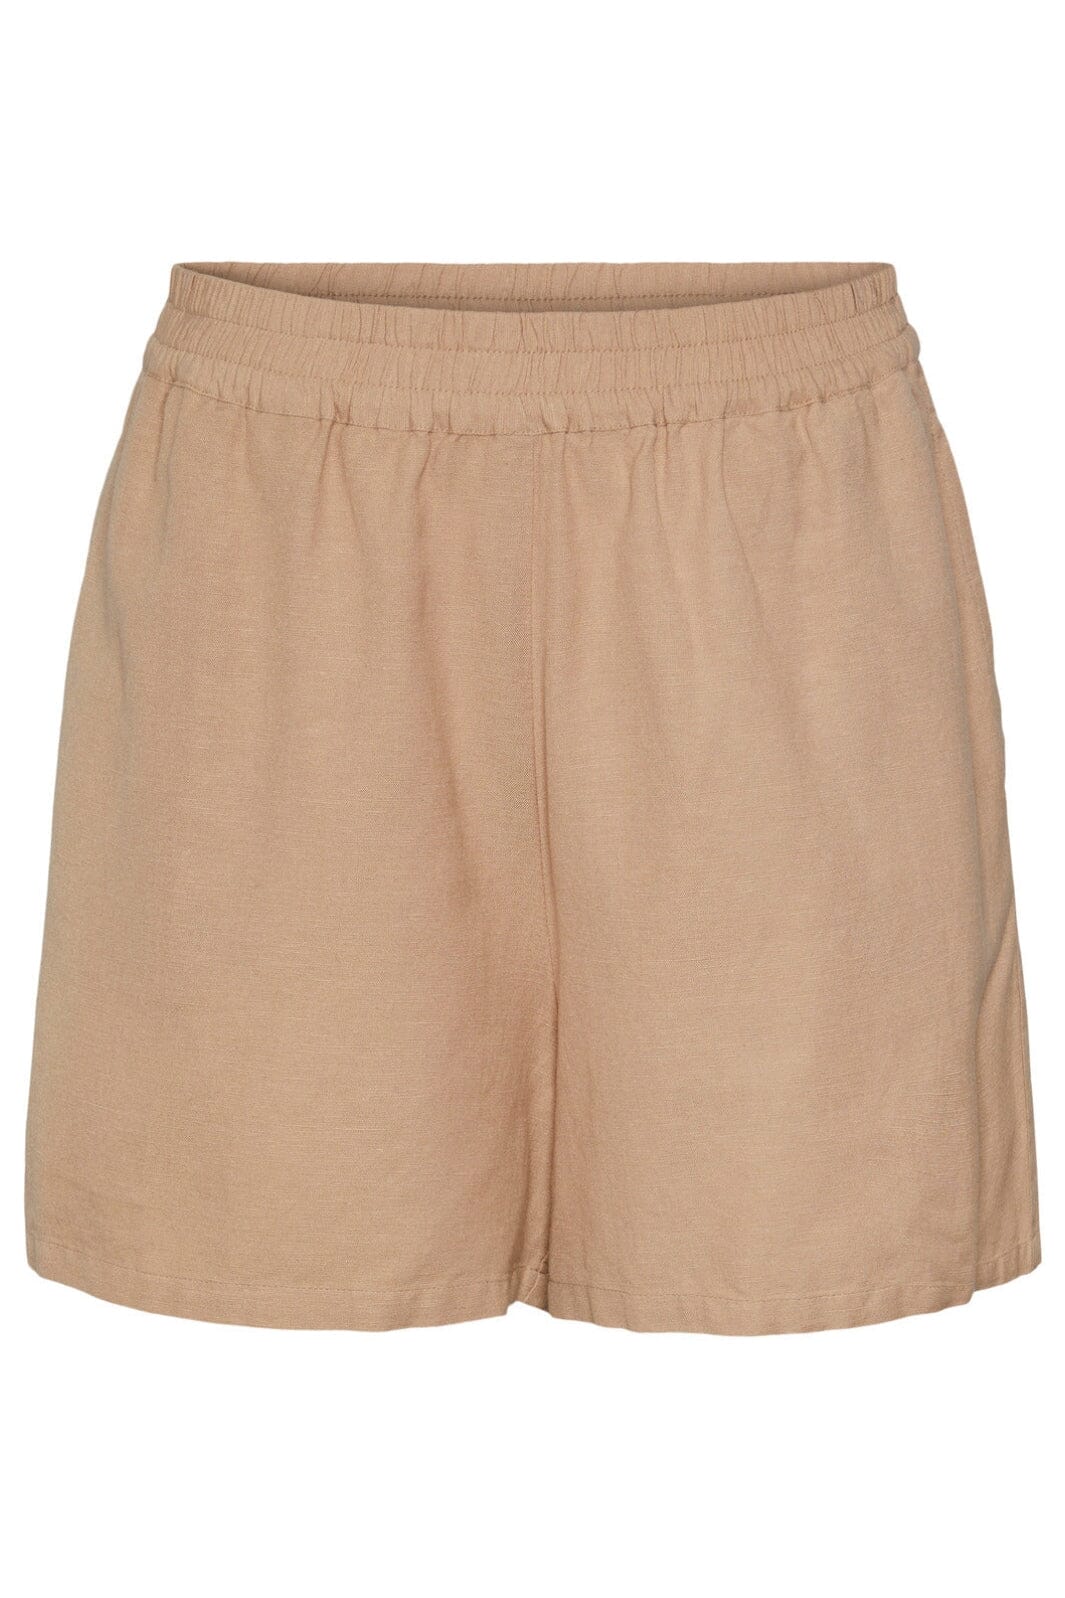 Milano shorts